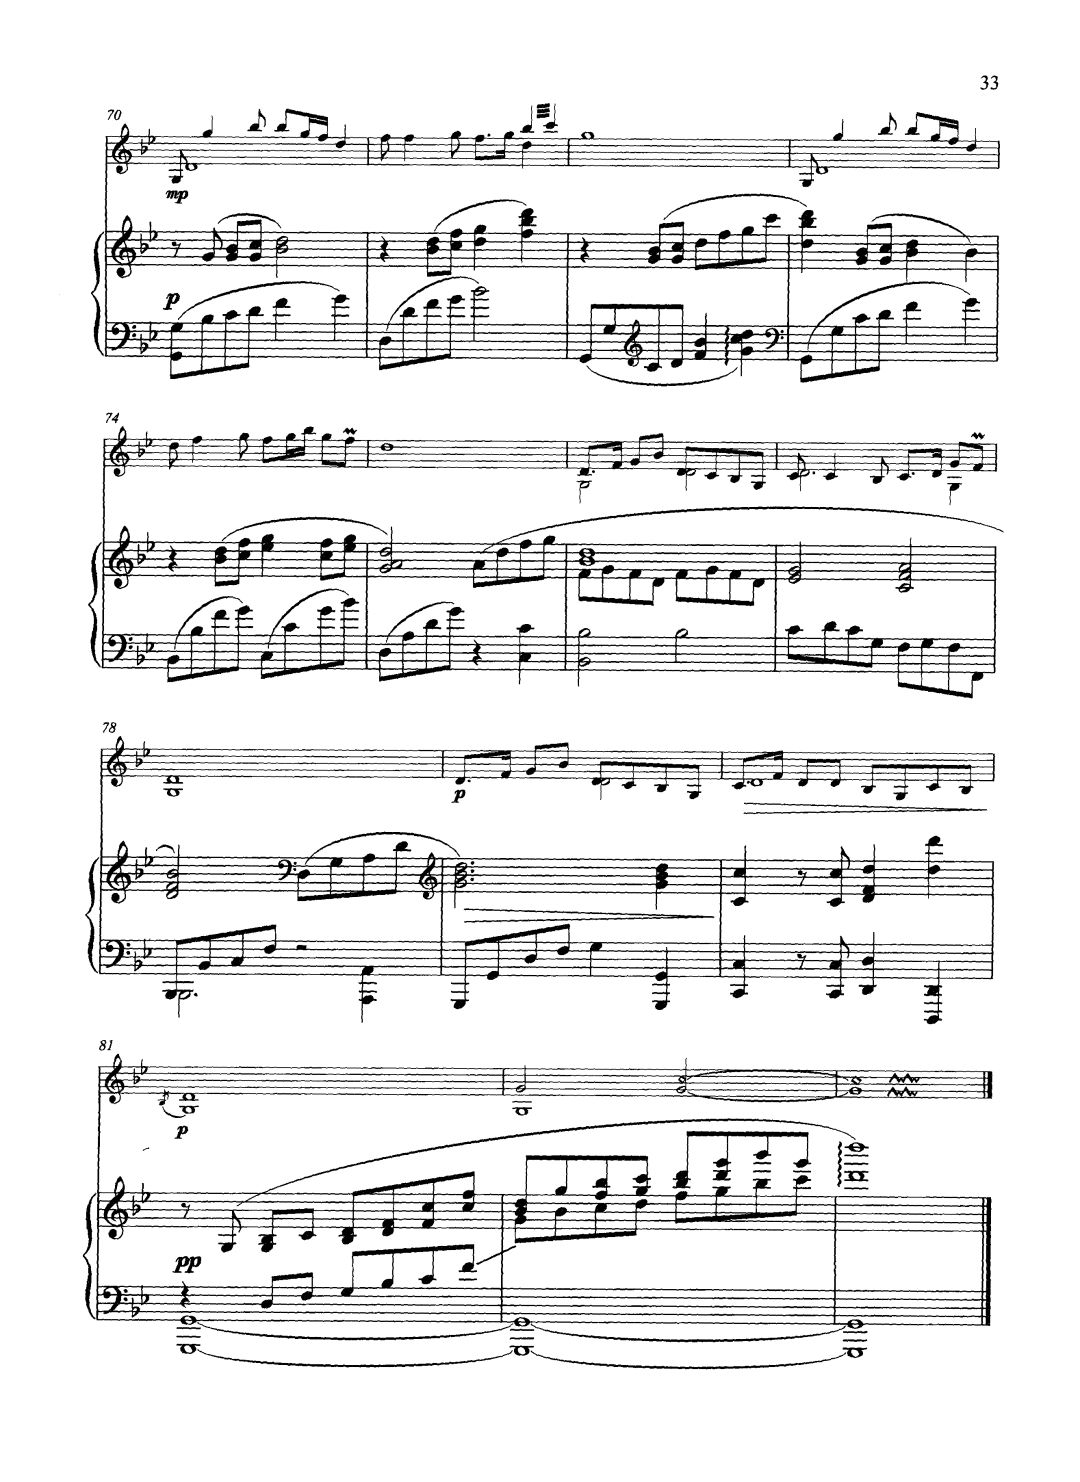 古老琴曲谱_拇指琴曲谱(3)